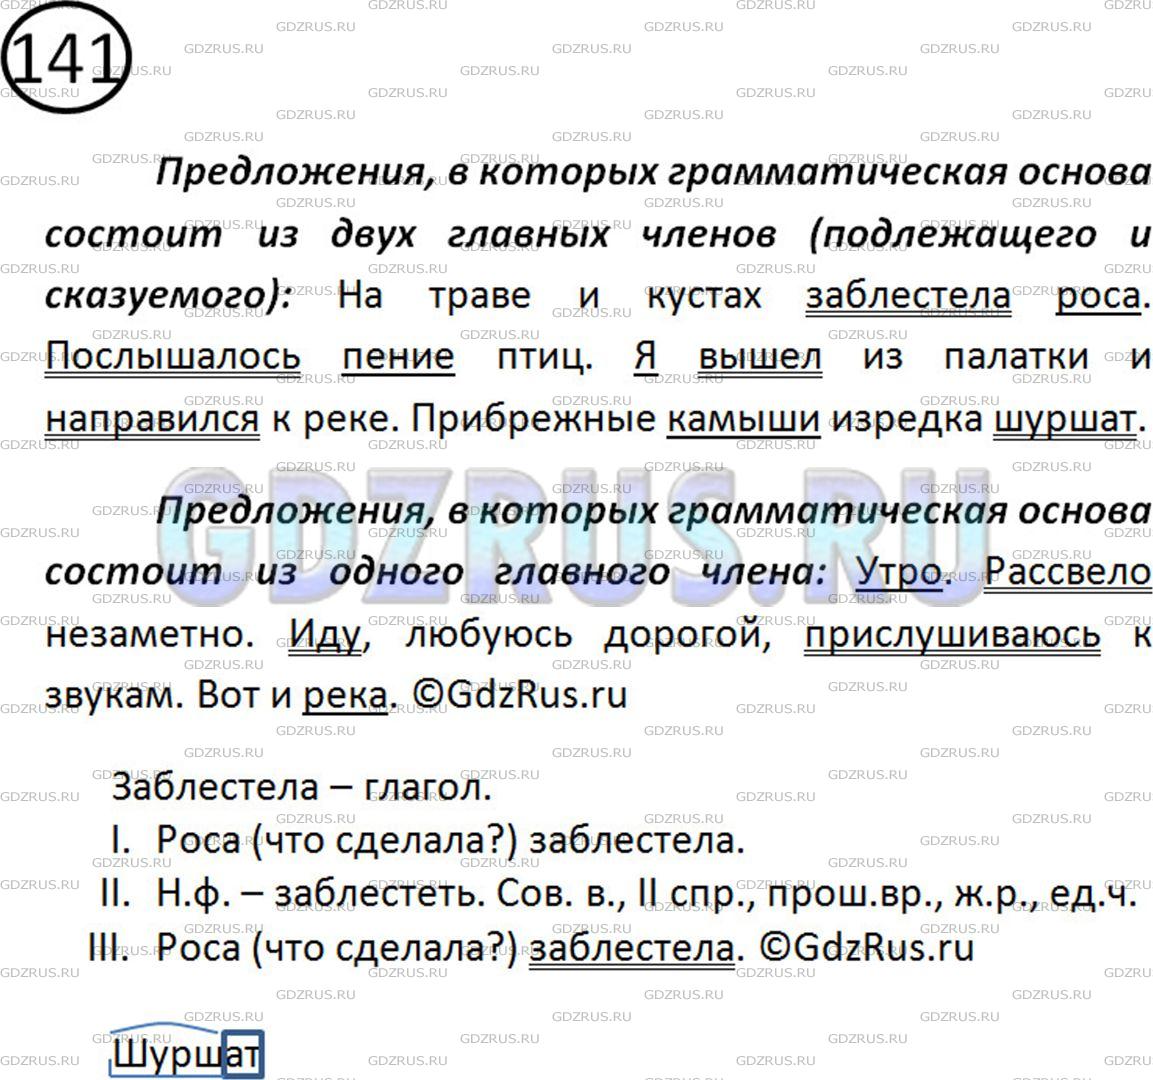 Фото решения 2: Номер №141 из ГДЗ по Русскому языку 5 класс: Ладыженская Т.А. 2012г.